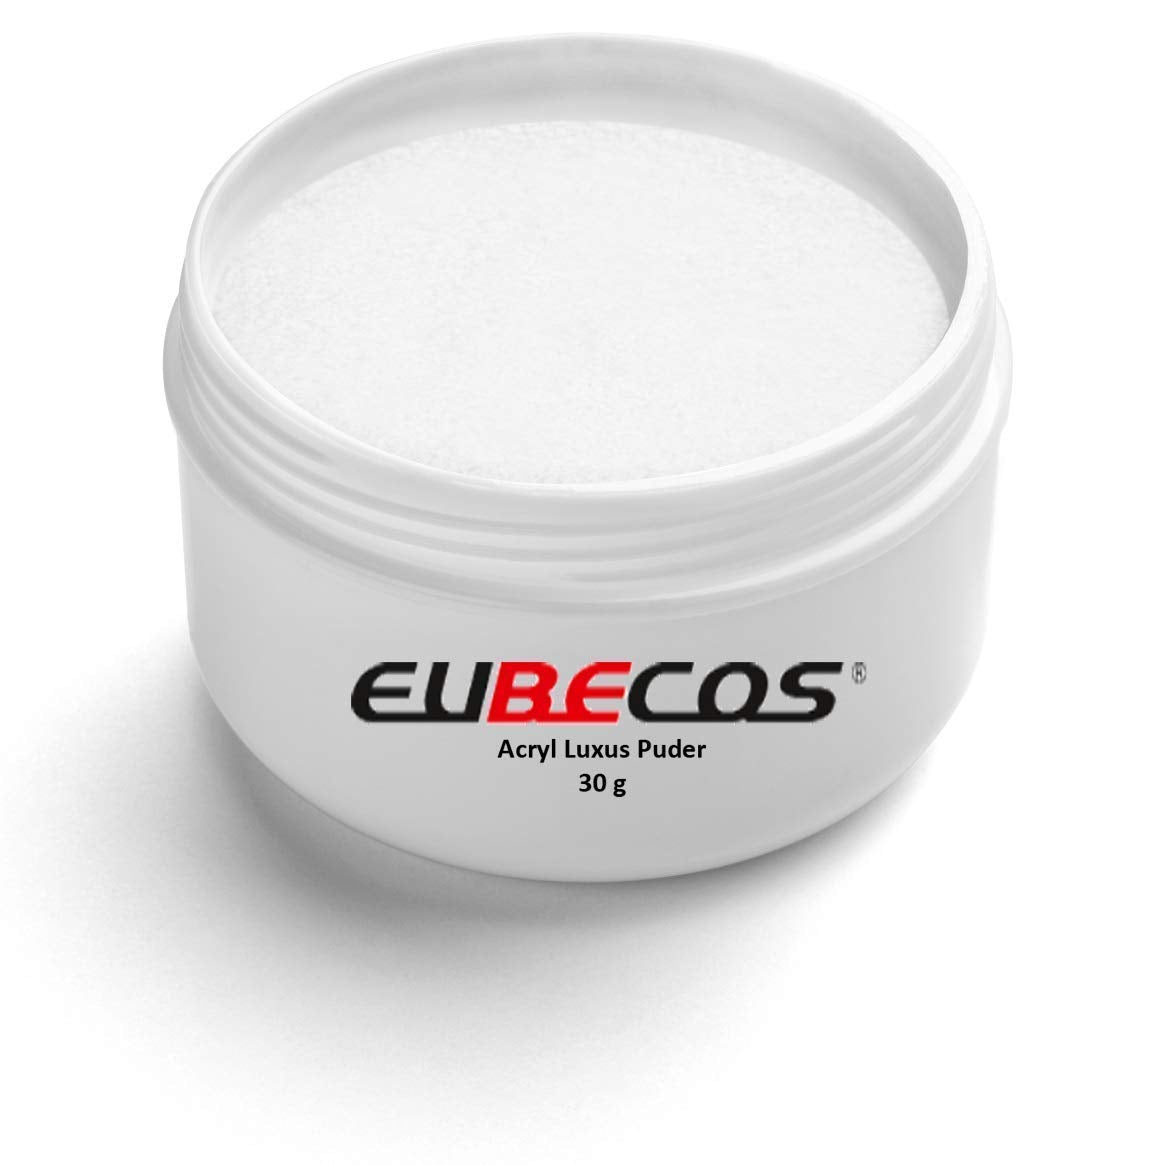 EuBeCos Acryl Puder 30 g - EuBeCos